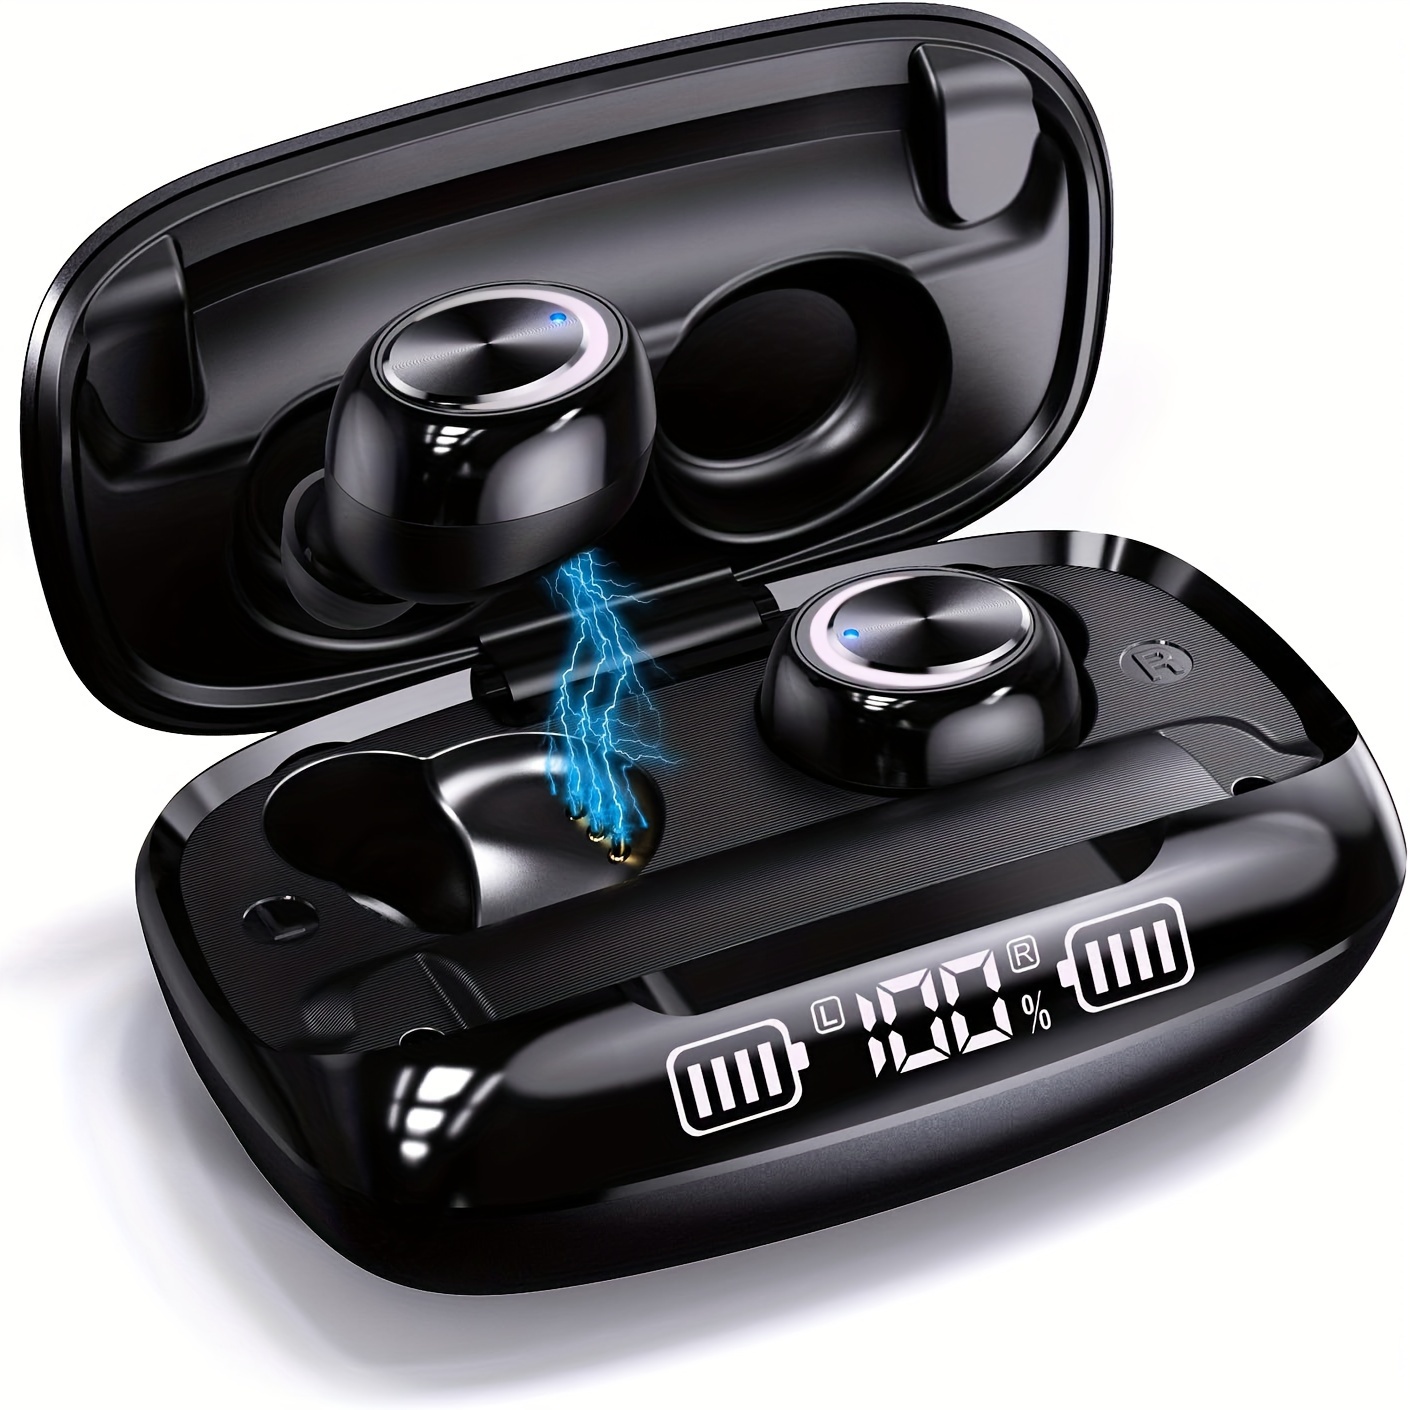 P9 Pro Max Casque Bluetooth sans fil Tws Écouteurs Casque de